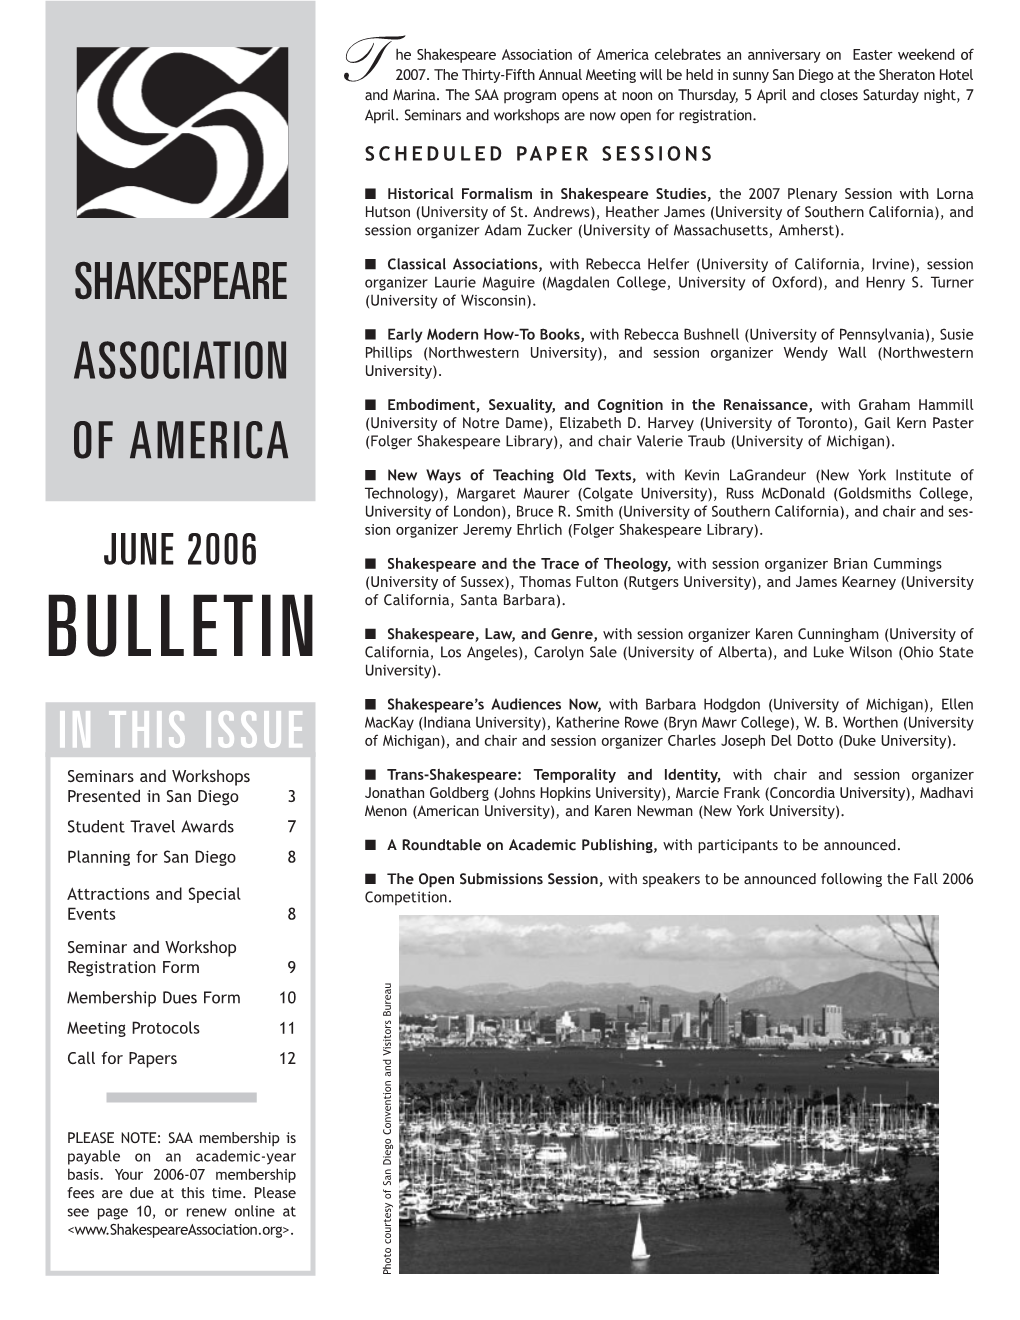 June 2006 Bulletin